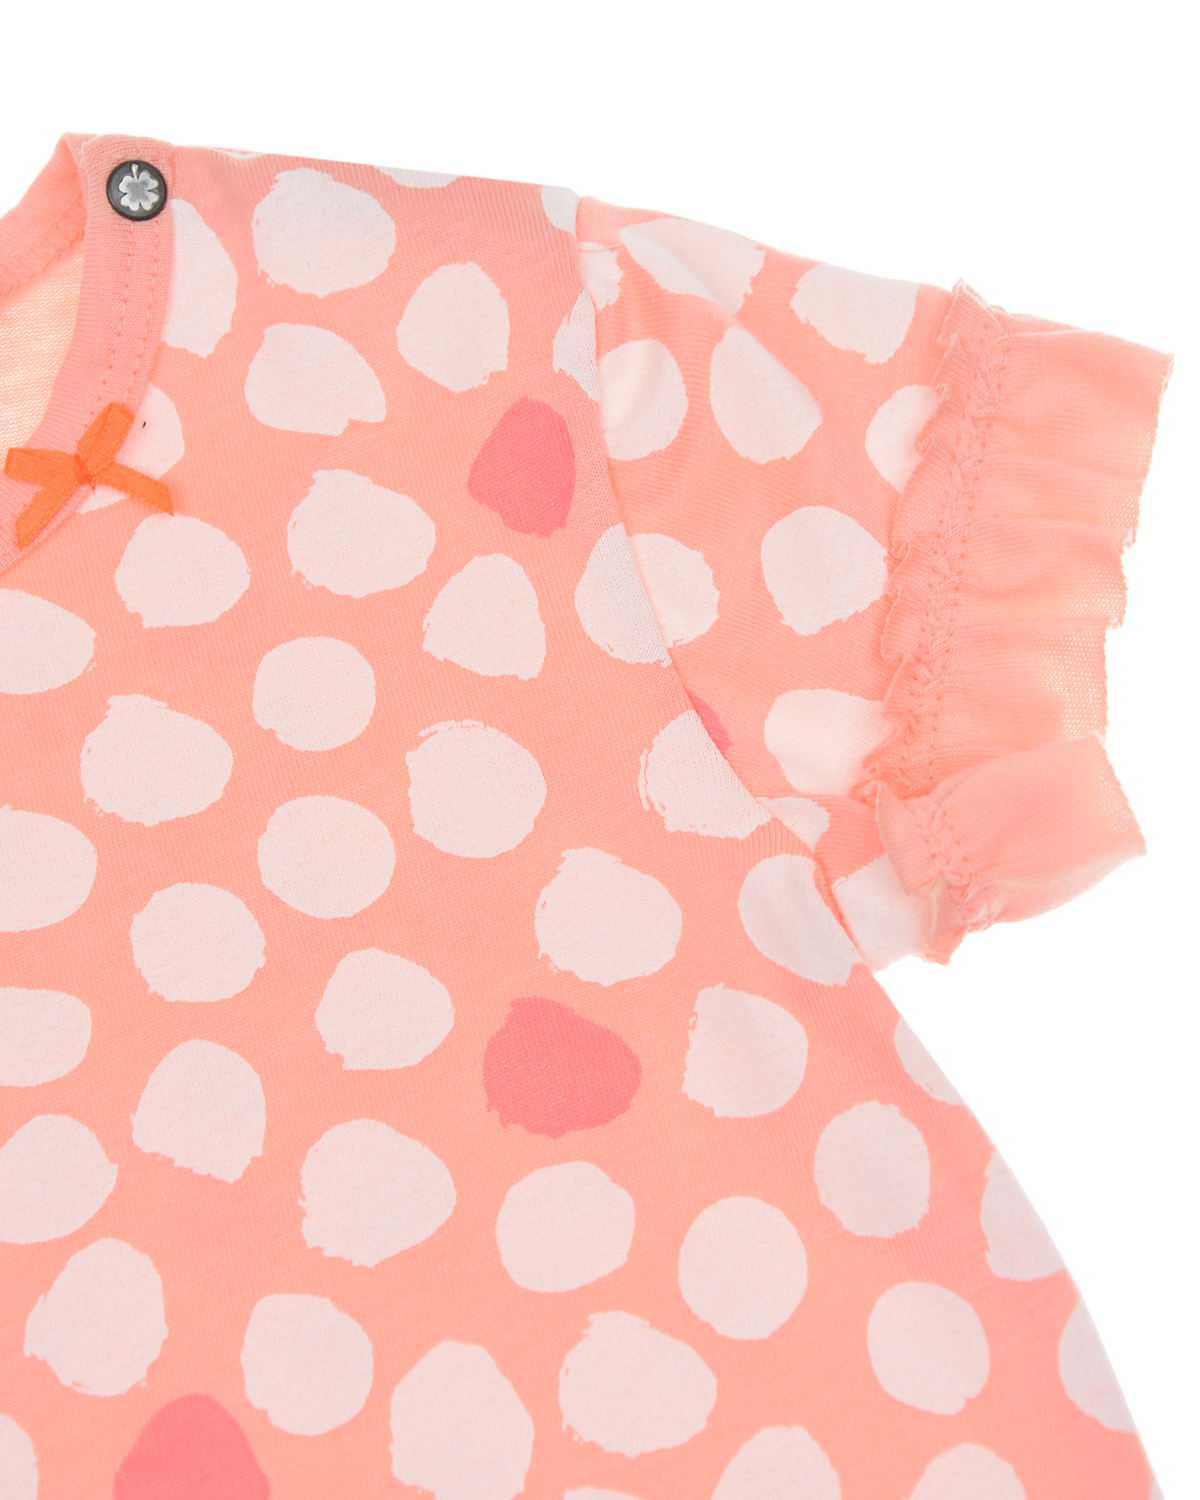 Футболка персикового цвета с принтом в горошек Sanetta Kidswear детская, размер 62 - фото 3